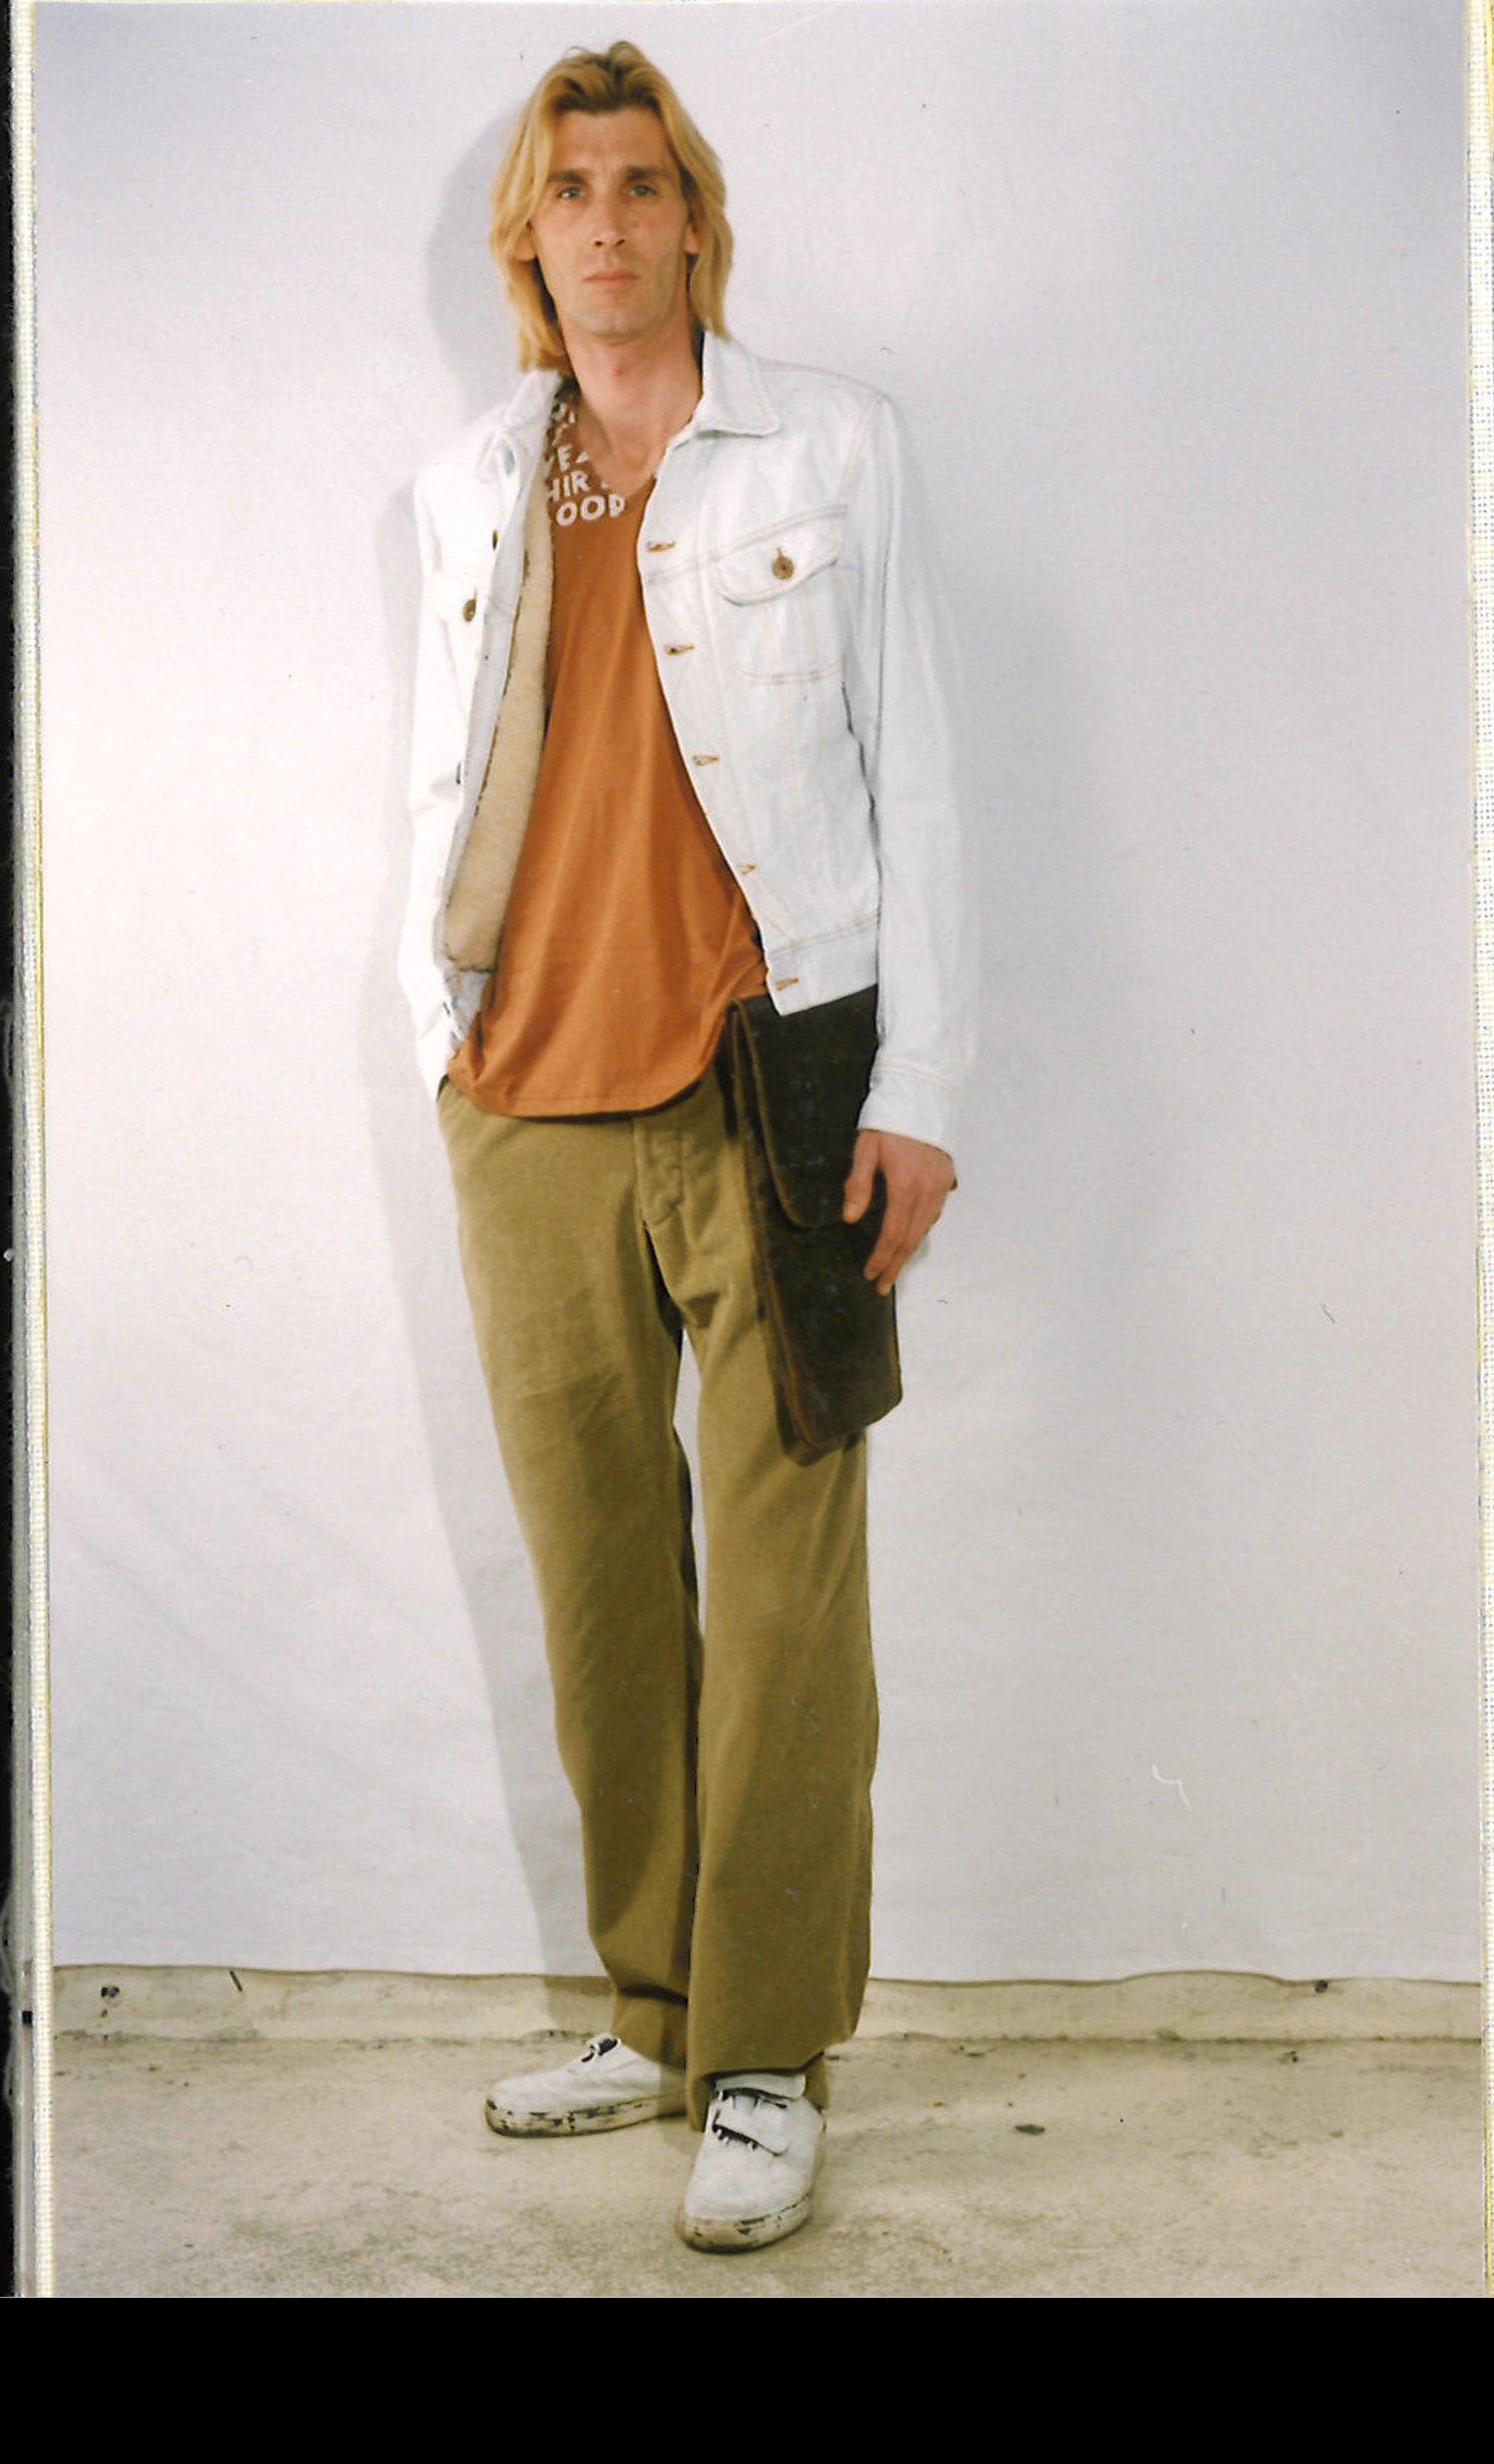 Maison Martin Margiela Lookbook
Menswear Collection Autumn/Winter 1999-2000